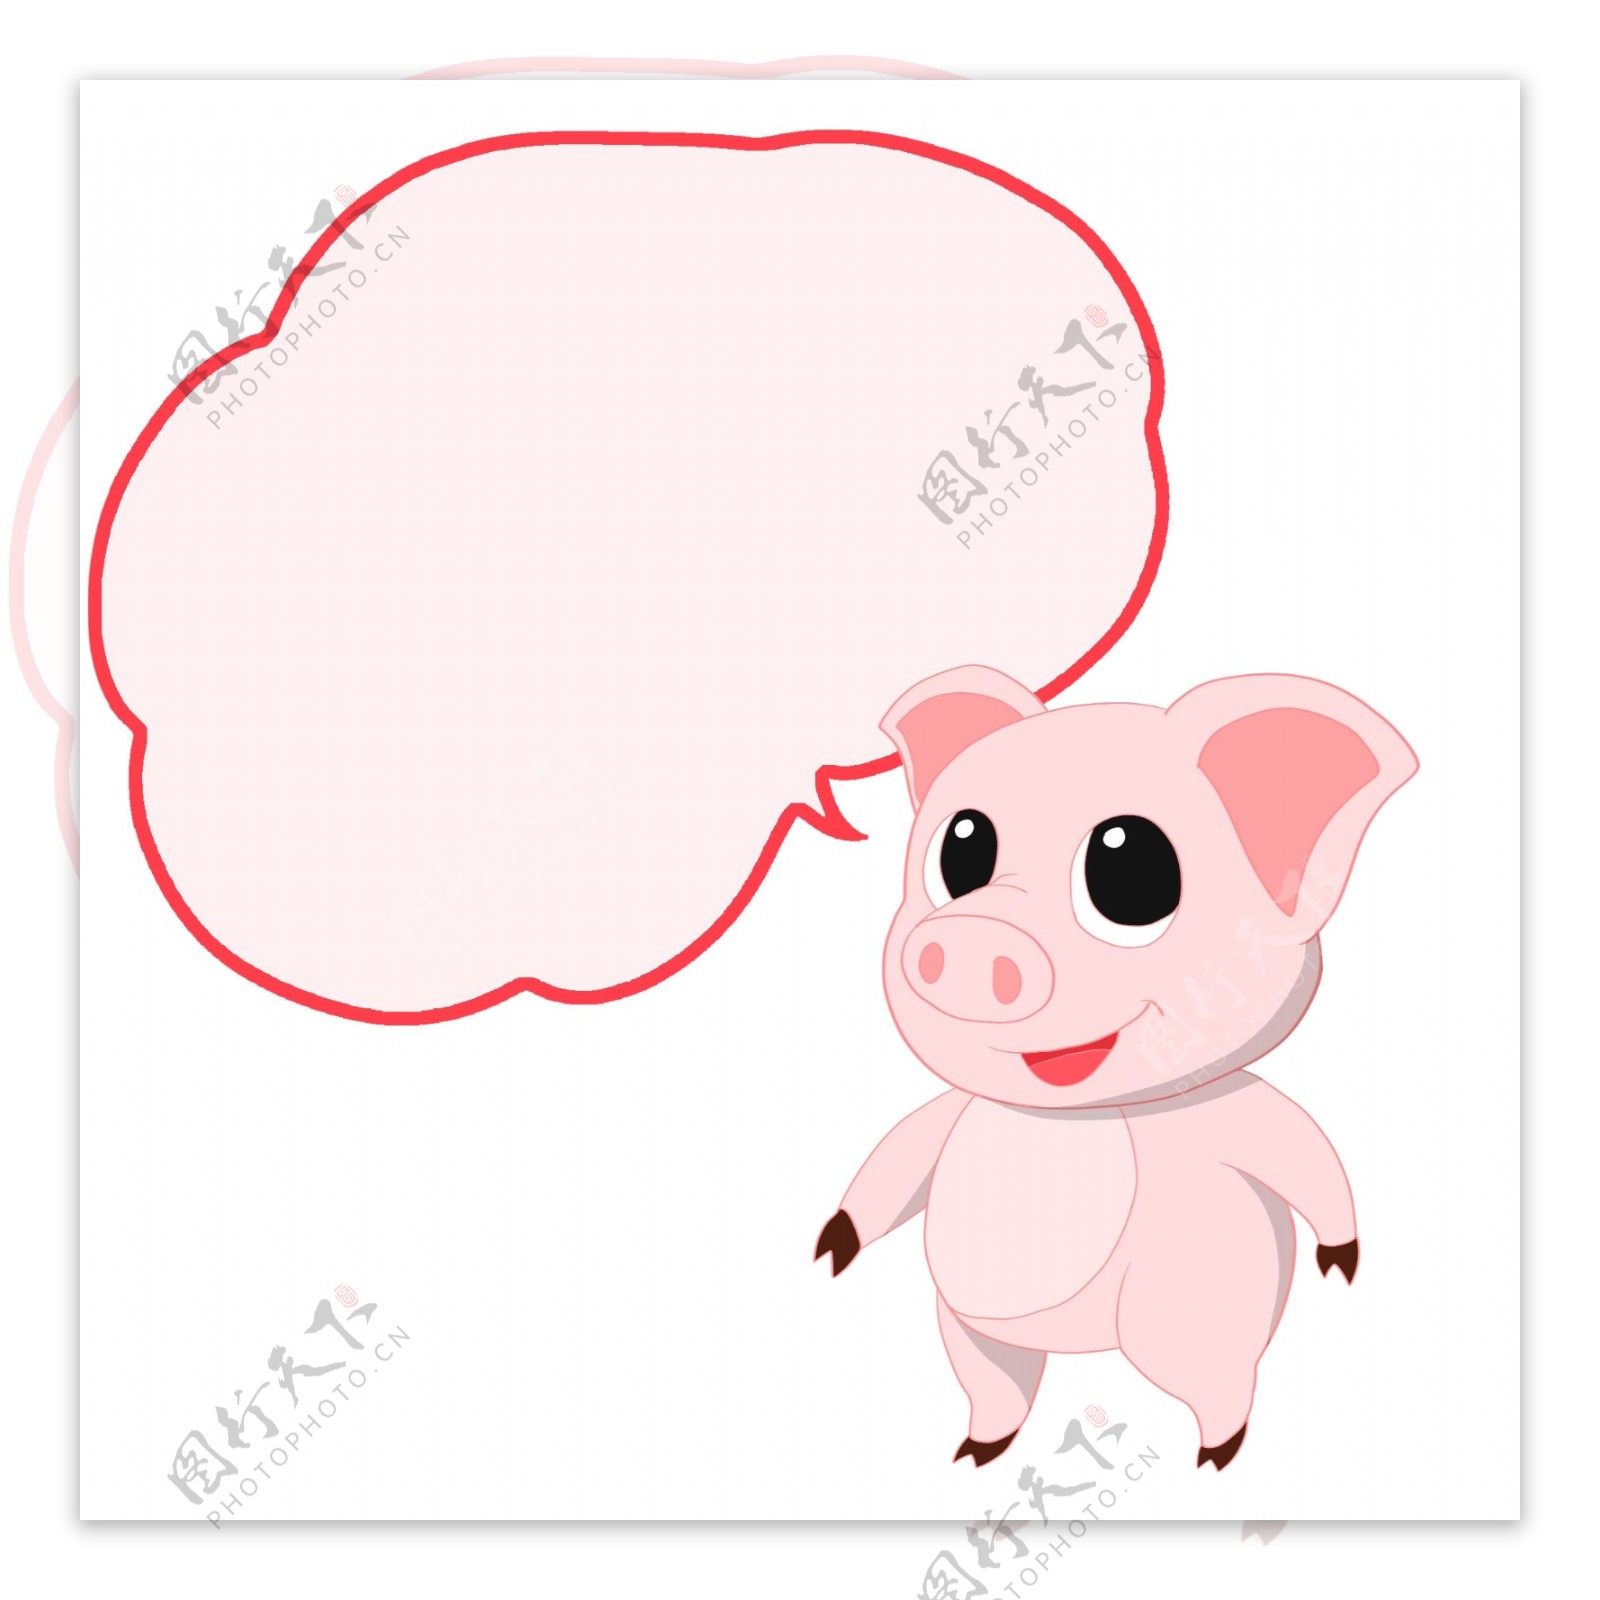 一群可爱的猪. 不同情感的搞笑猪表情人物 向量例证. 插画 包括有 滑稽, 逗人喜爱, 乐趣, 贪心, 图象 - 232259135